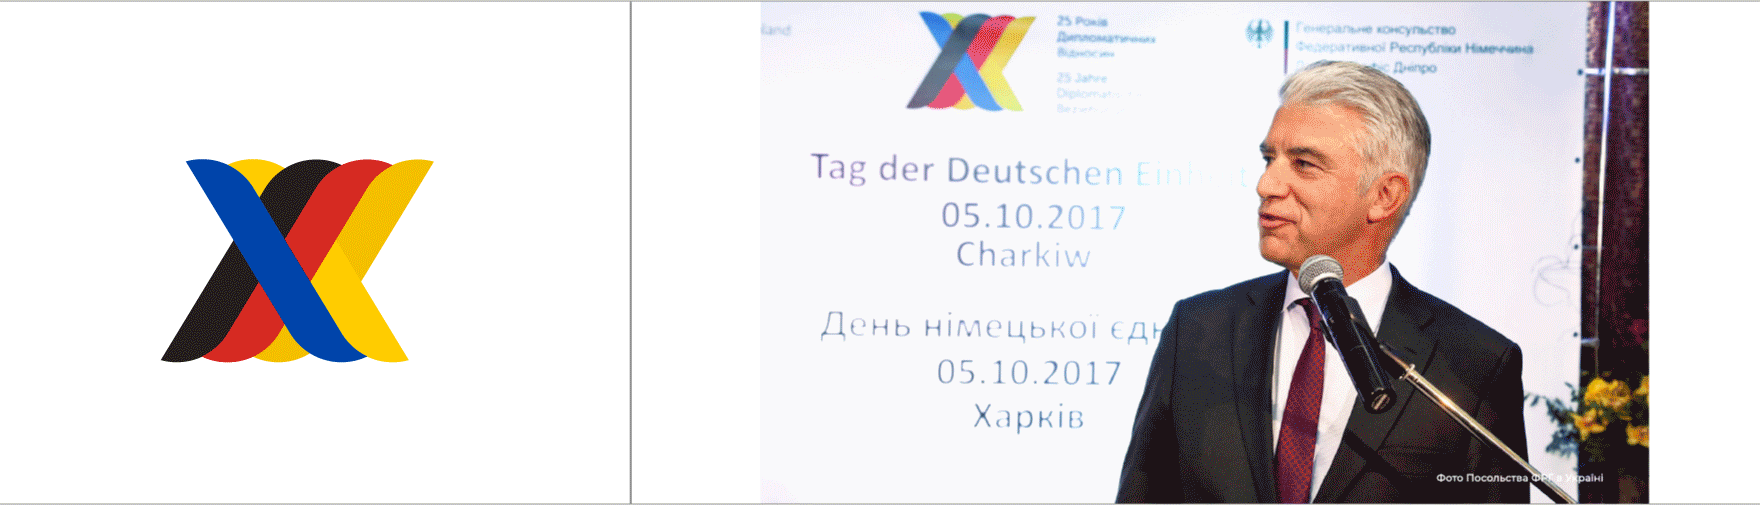 Tag der Deutschen 05.10.2017 Charkiw